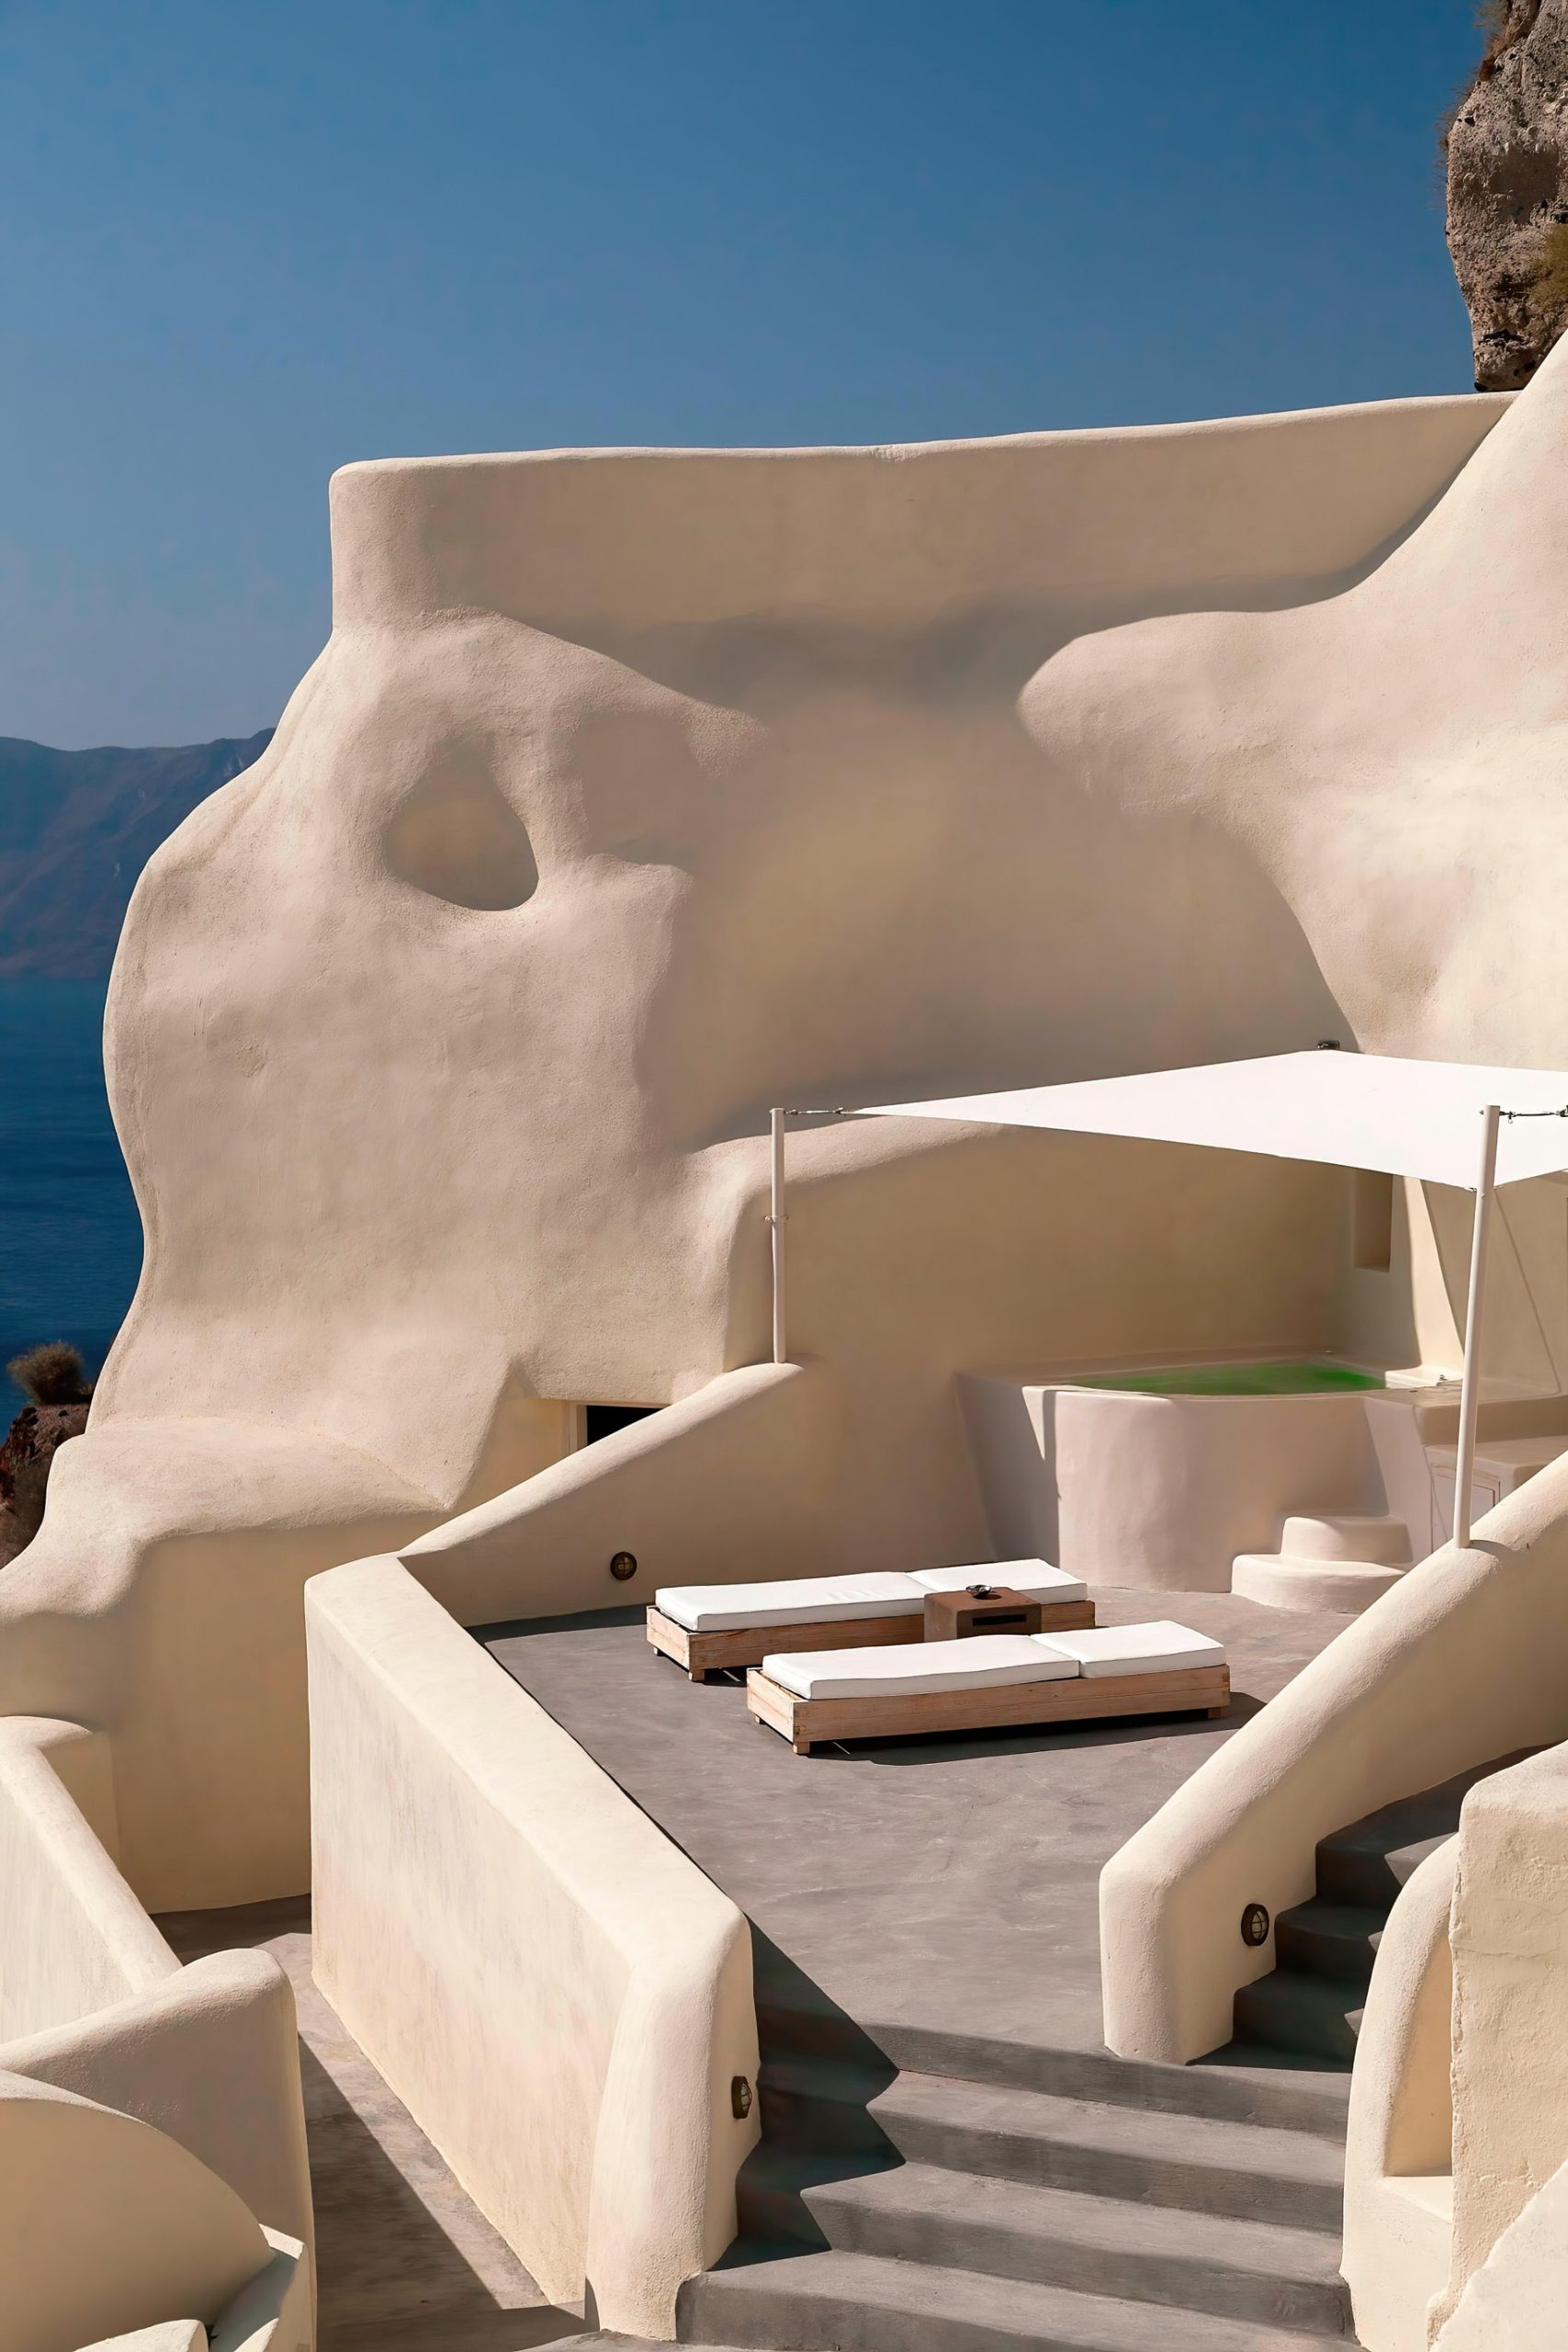 Mystique Hotel Santorini – Oia, Santorini Island, Greece – Private Terrace Sun Beds